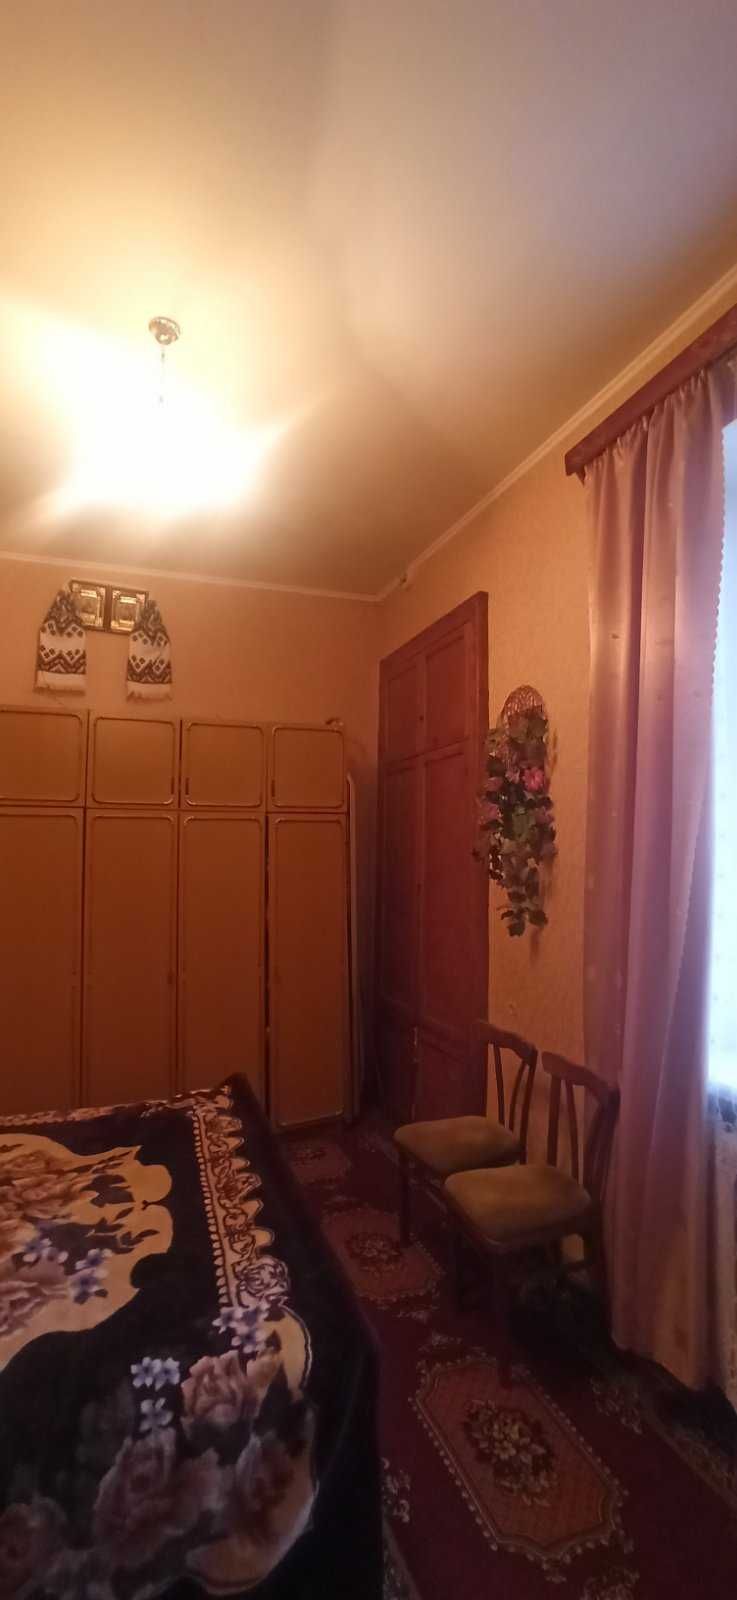 продам 2-х кімнатну квартиру по вул. гетьмана Мазепи (м. Здолбунів).